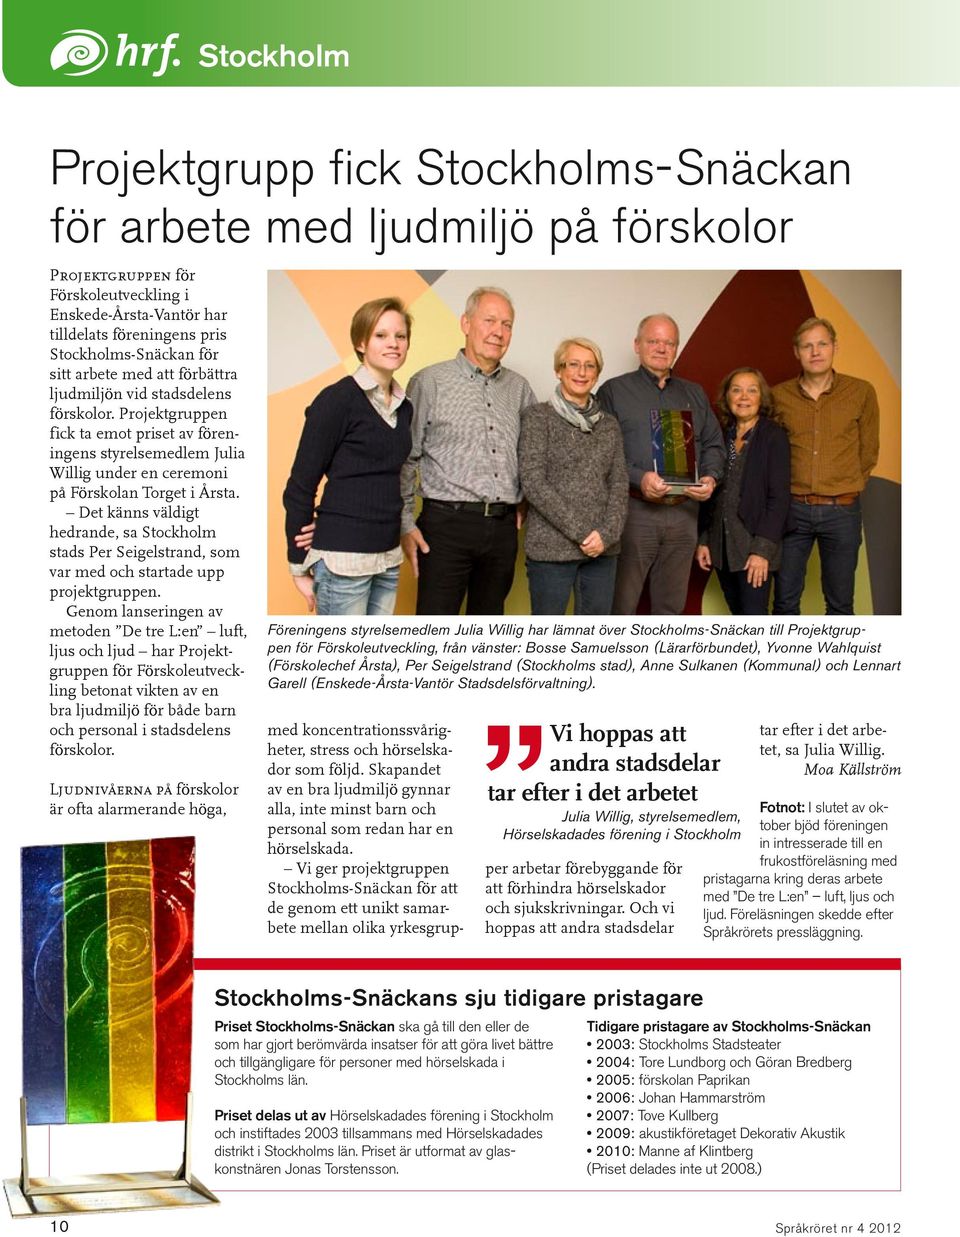 Det känns väldigt hedrande, sa Stockholm stads Per Seigelstrand, som var med och startade upp projektgruppen.